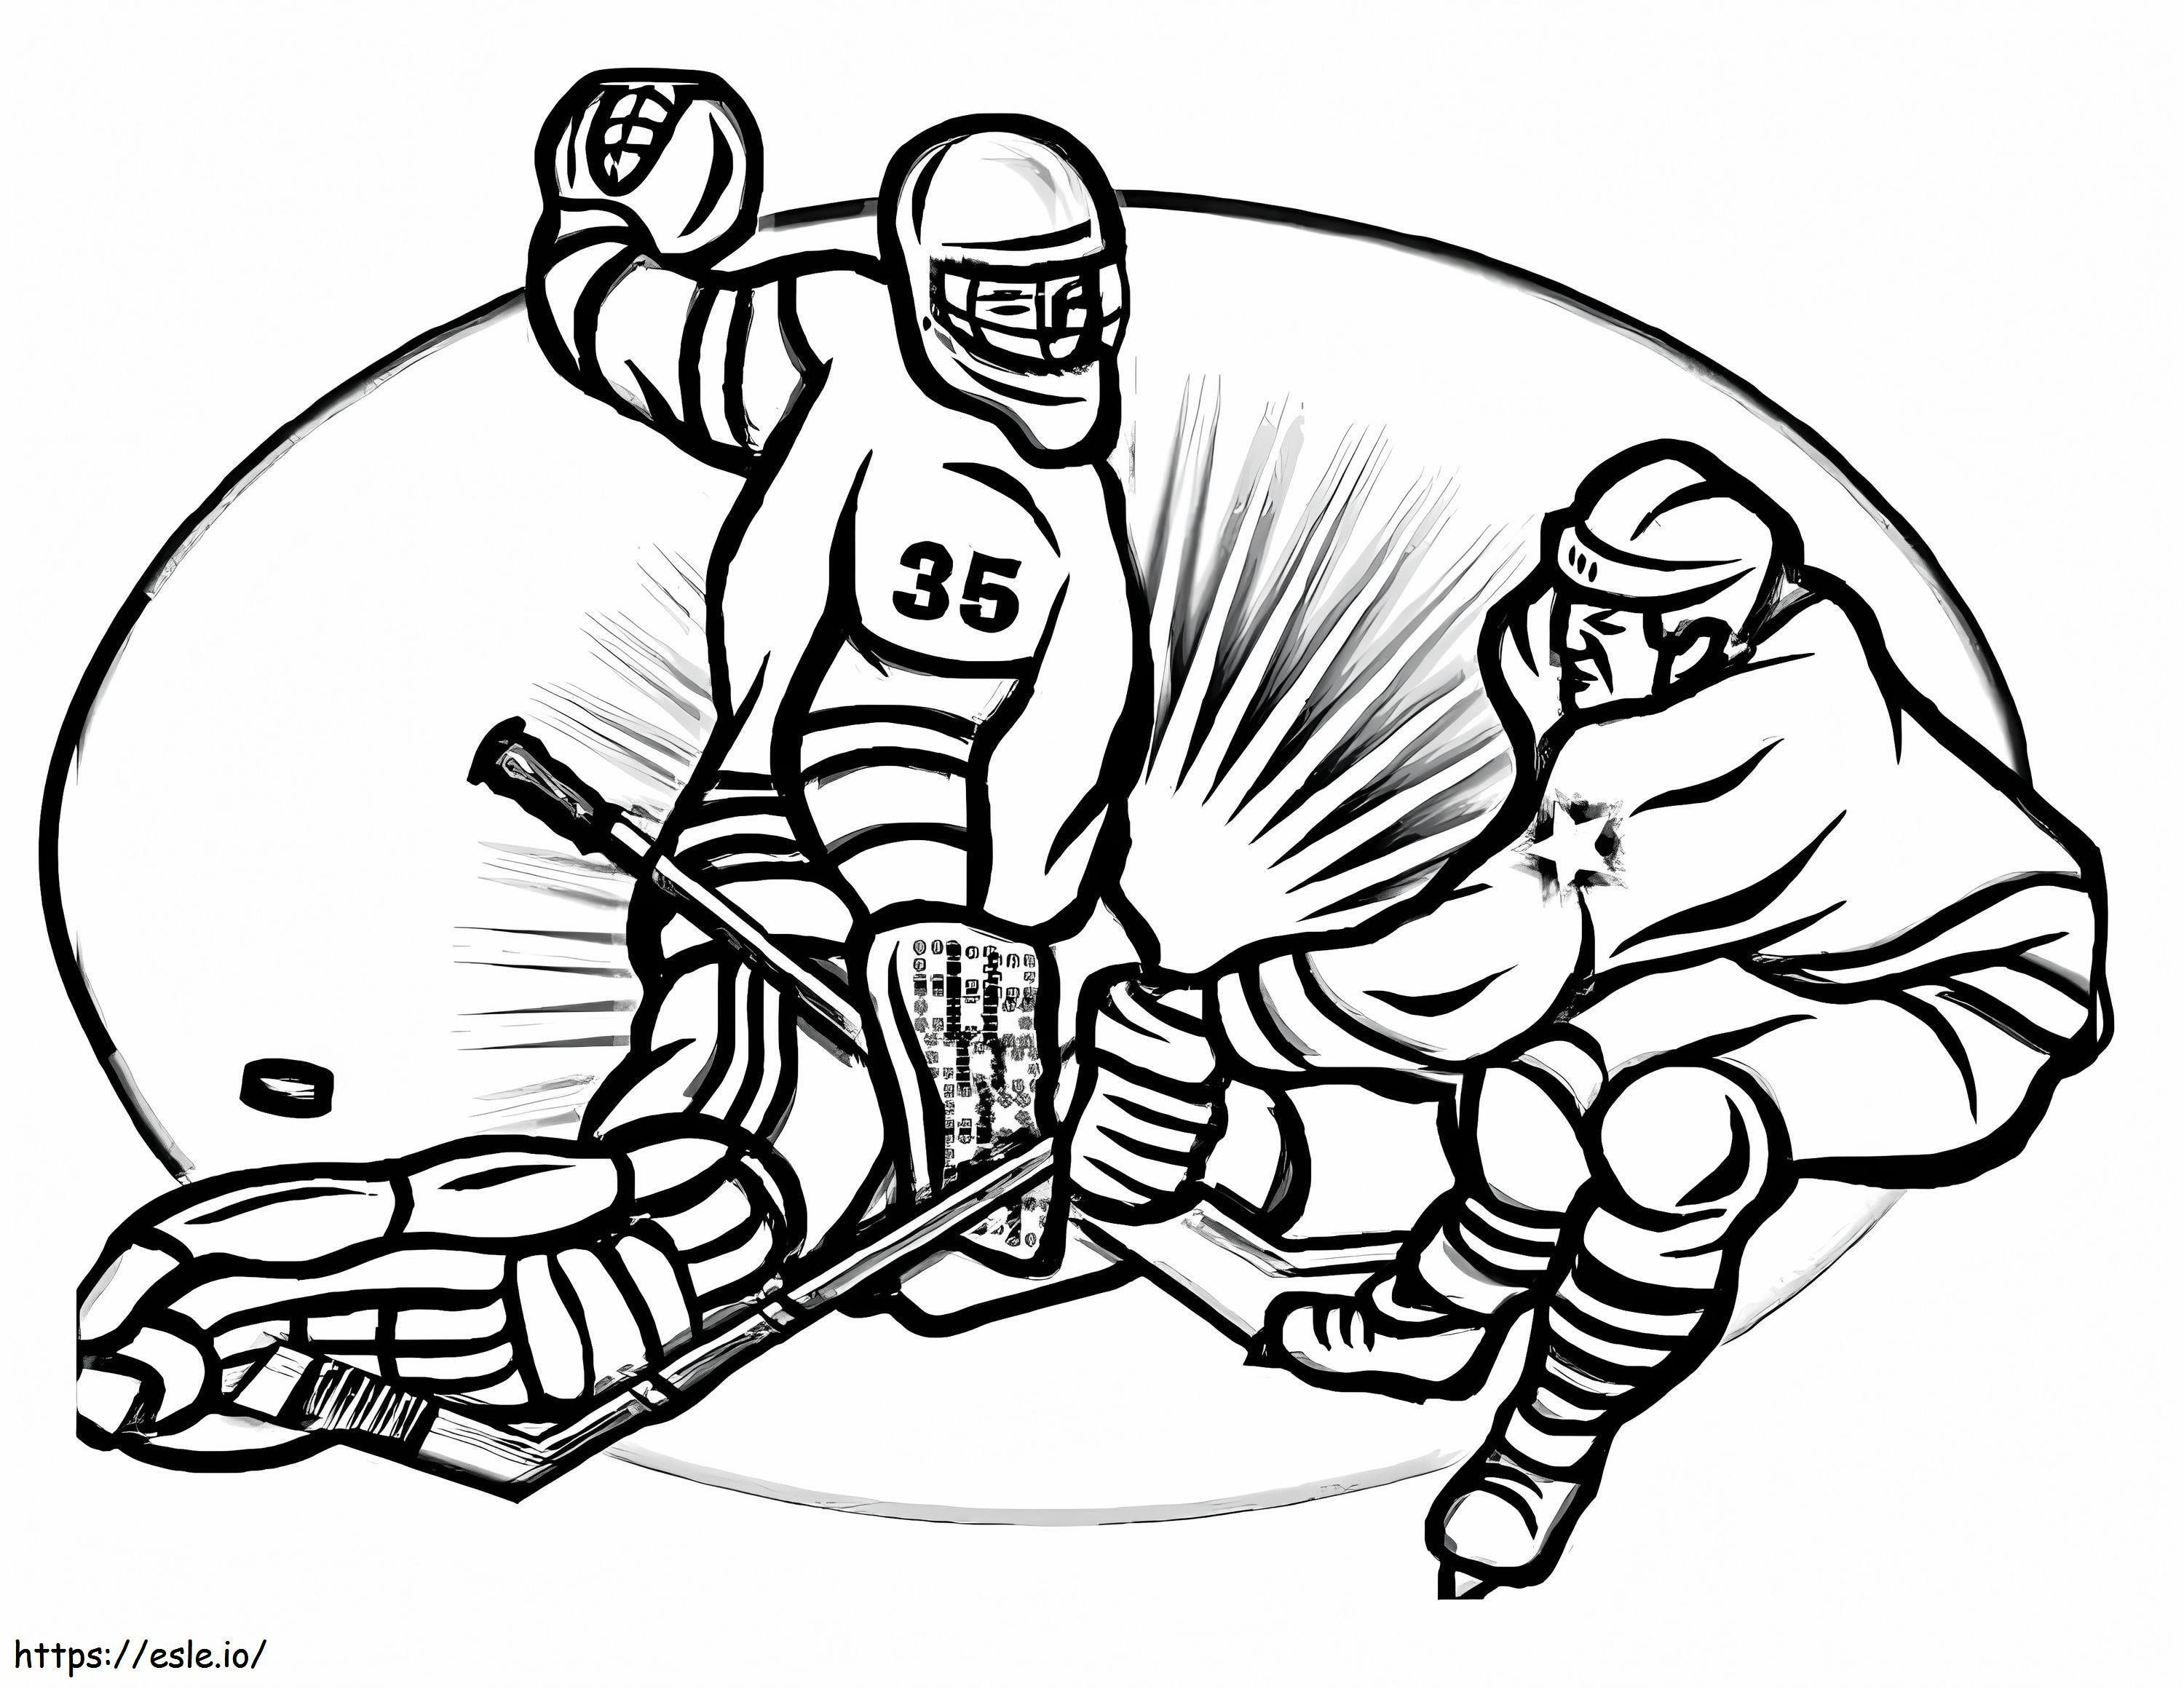 Zwei Hockeyspieler ausmalbilder